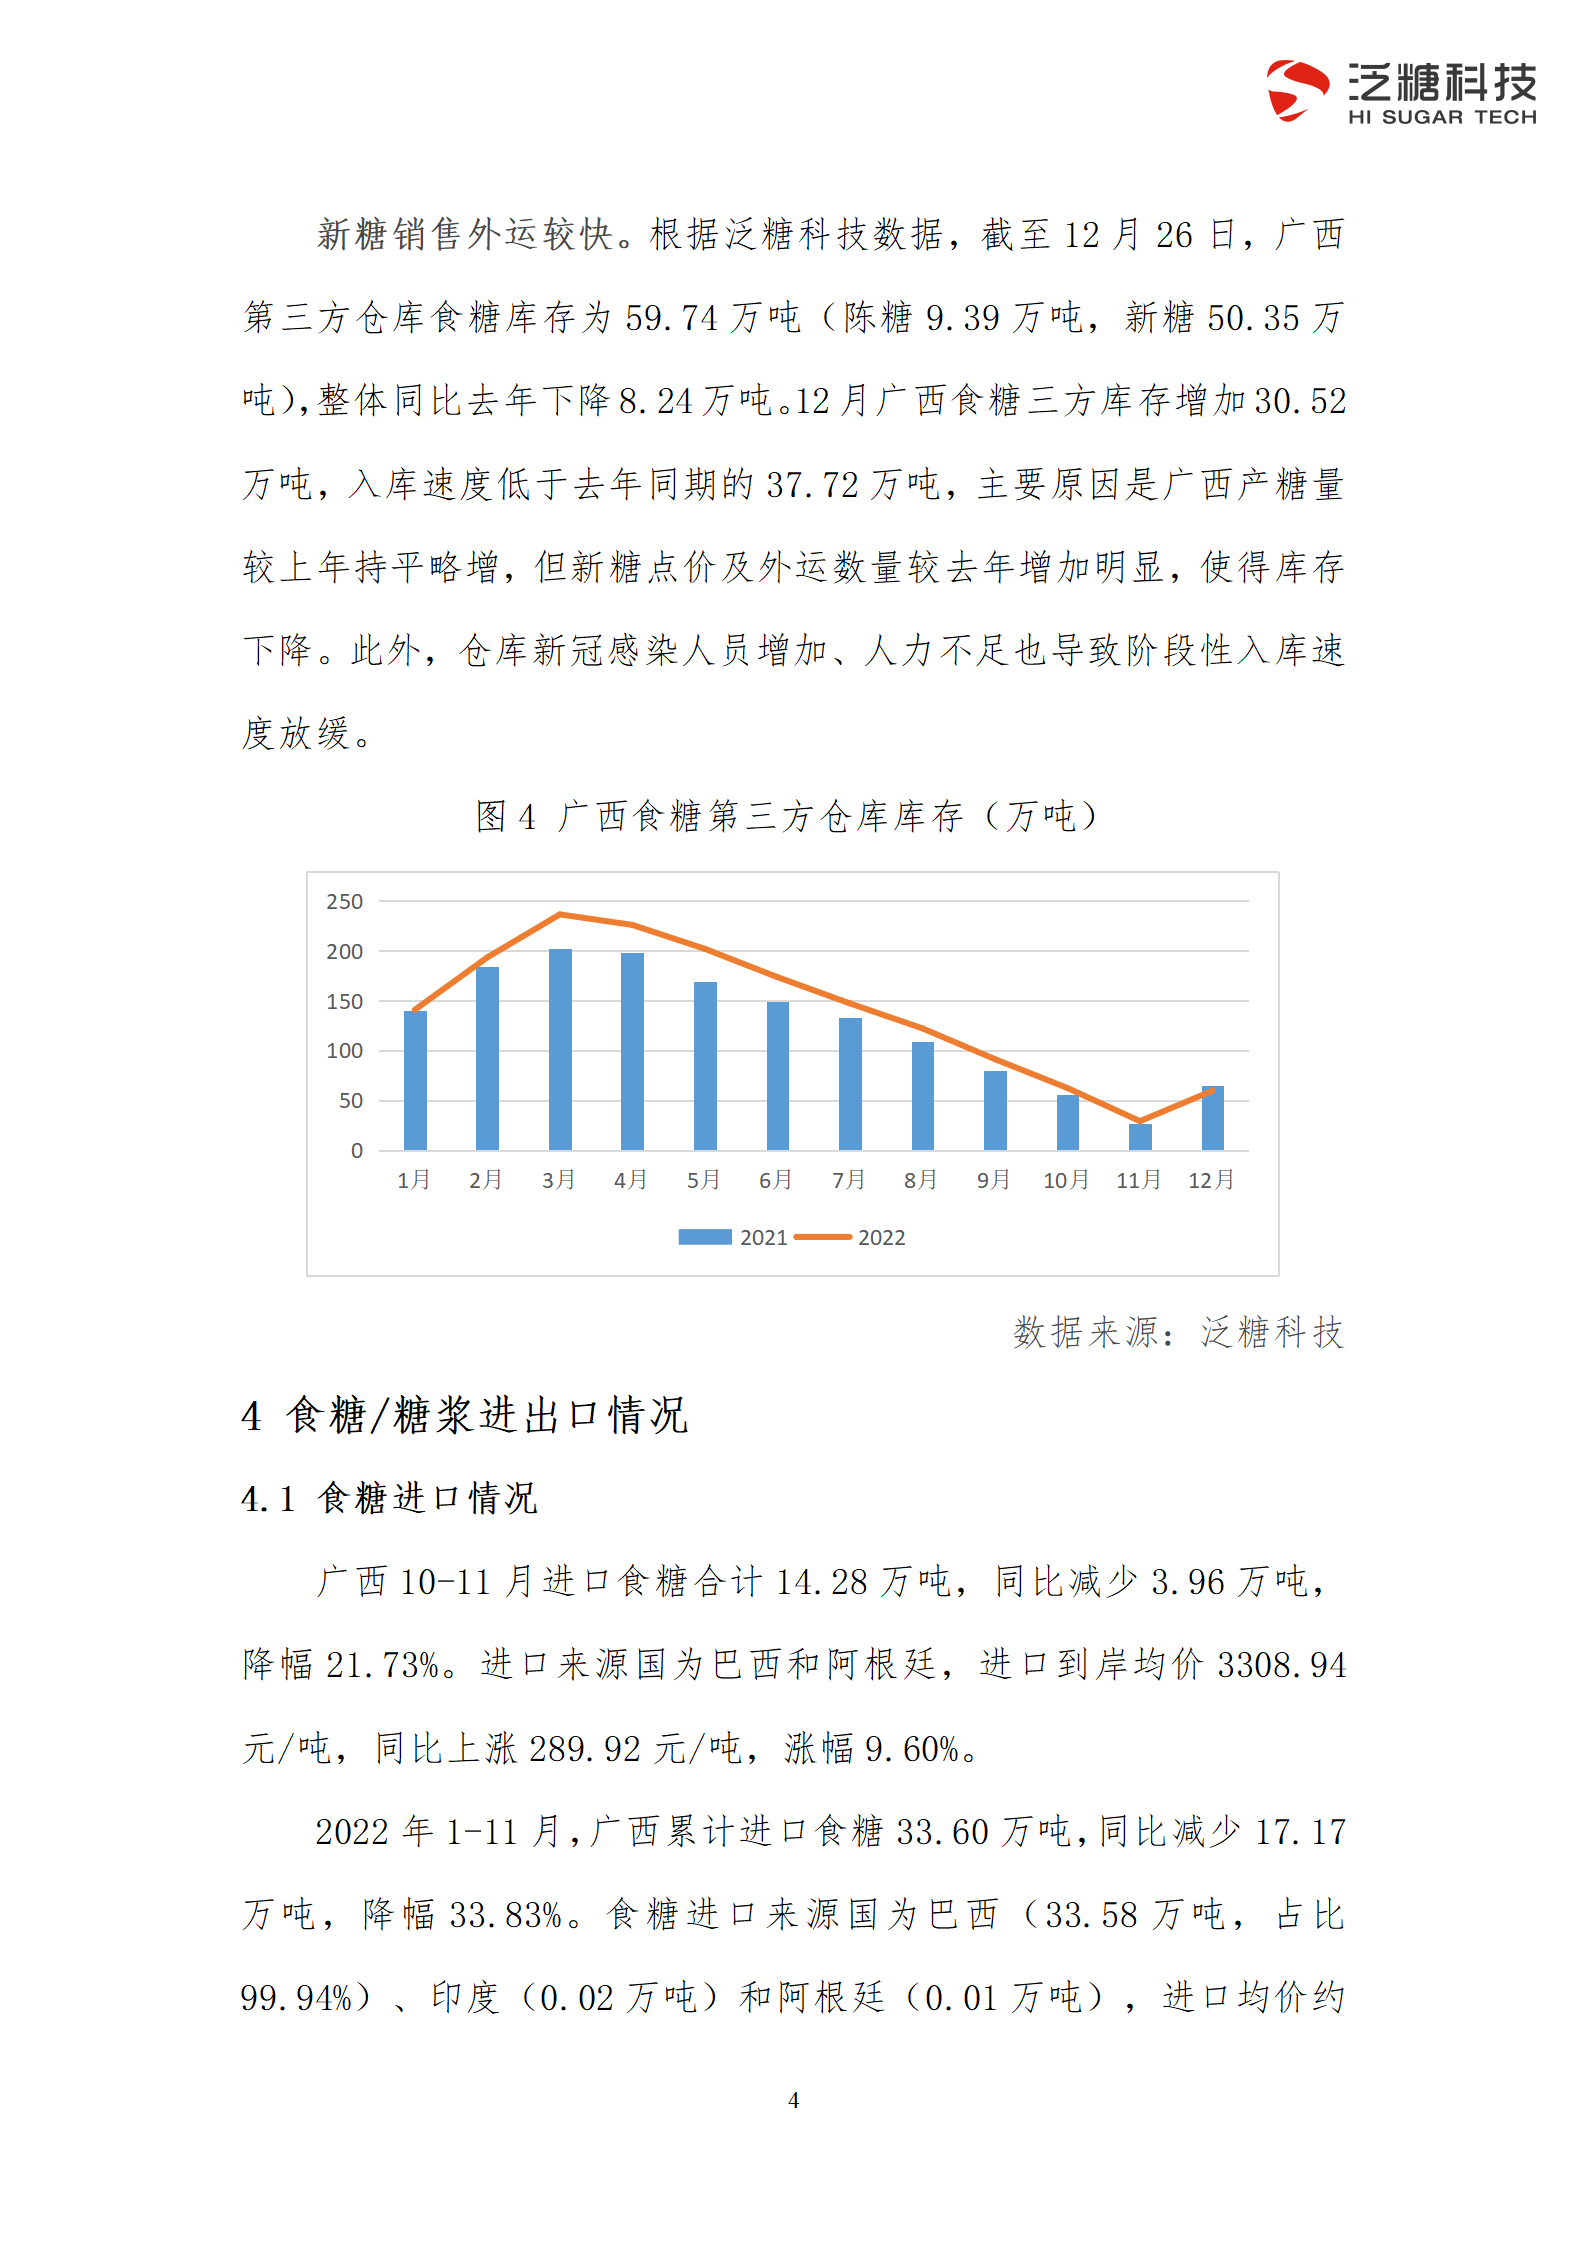 简化版-广西食糖产业运行分析报告（2022年第四季度）_07.png